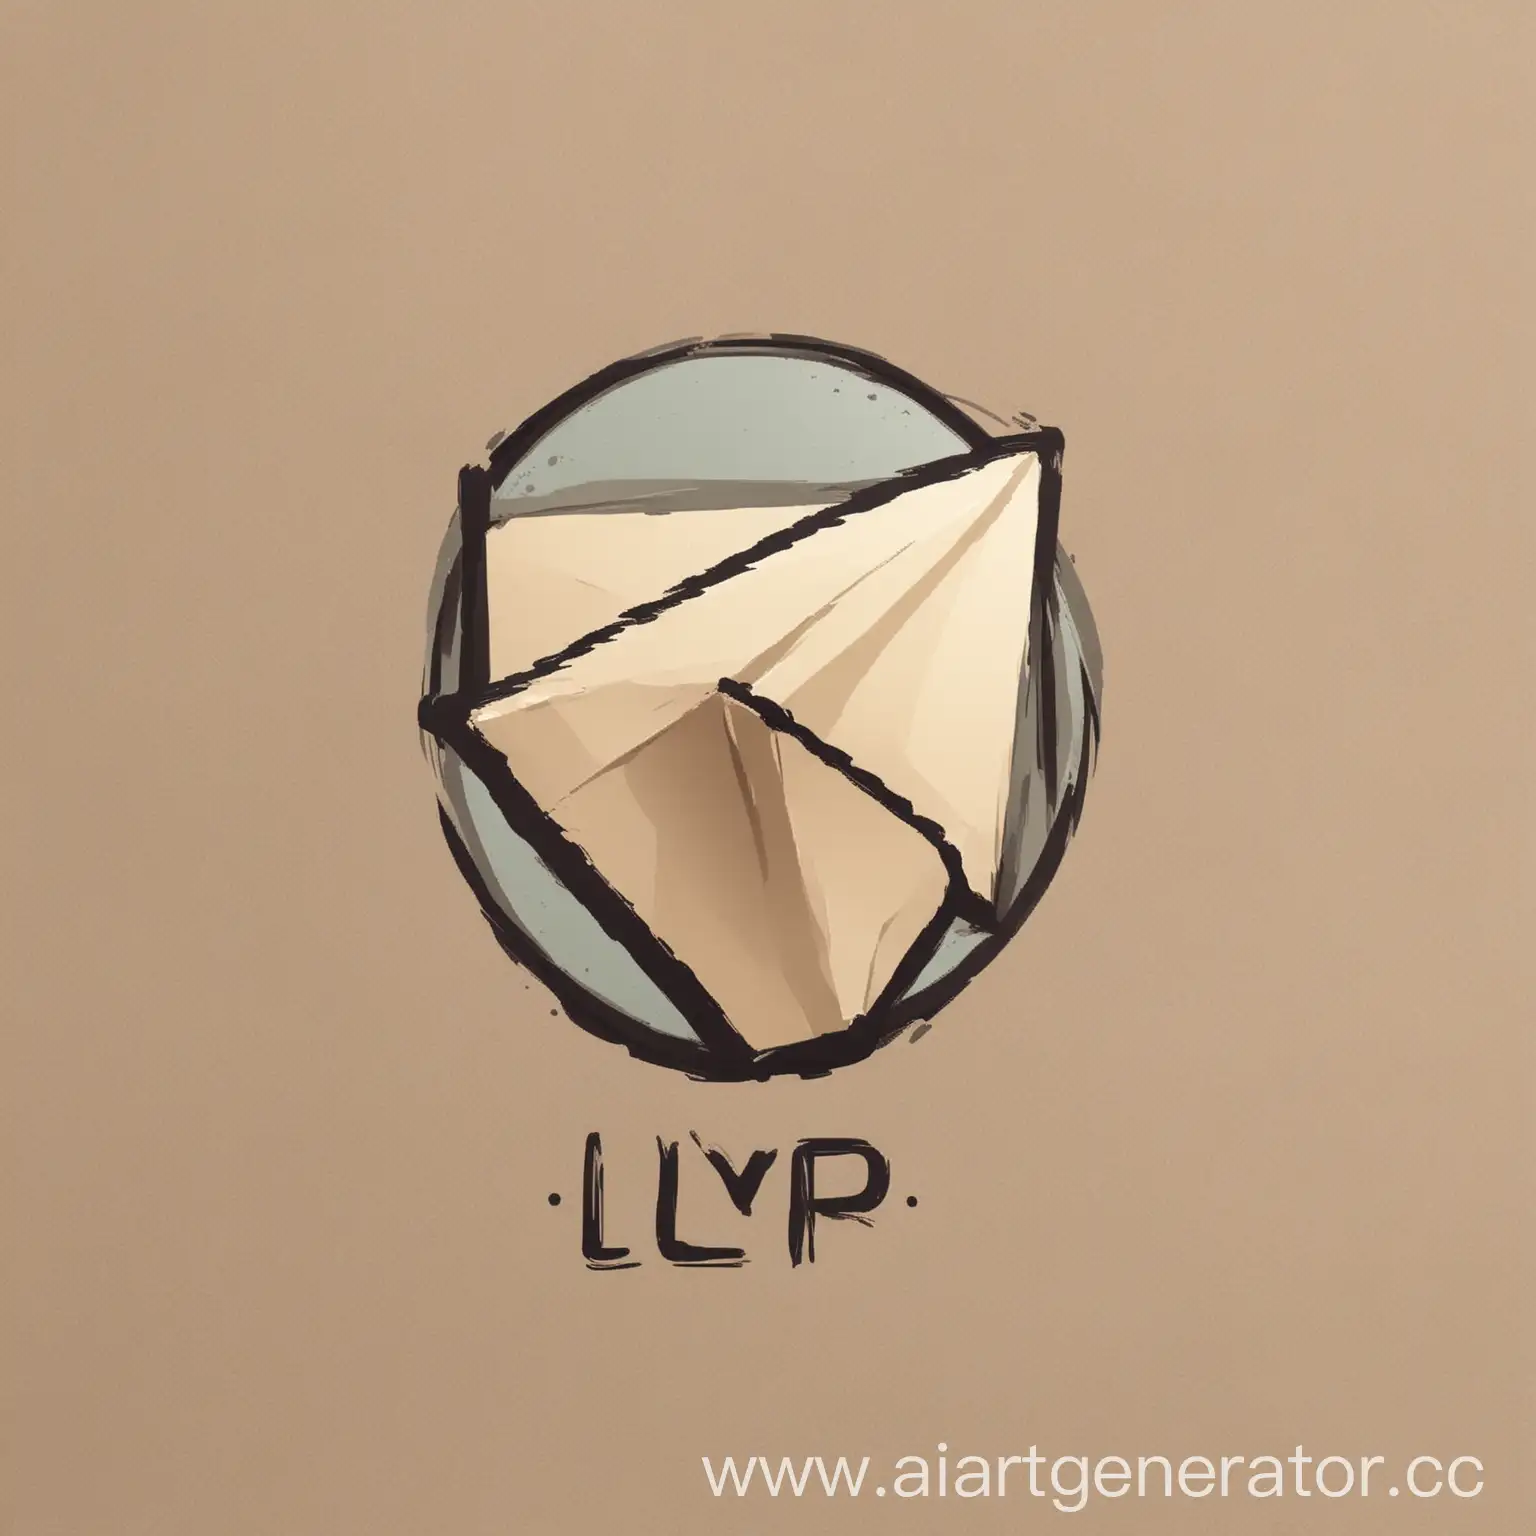 логотип с названием lyp для телеграмма
